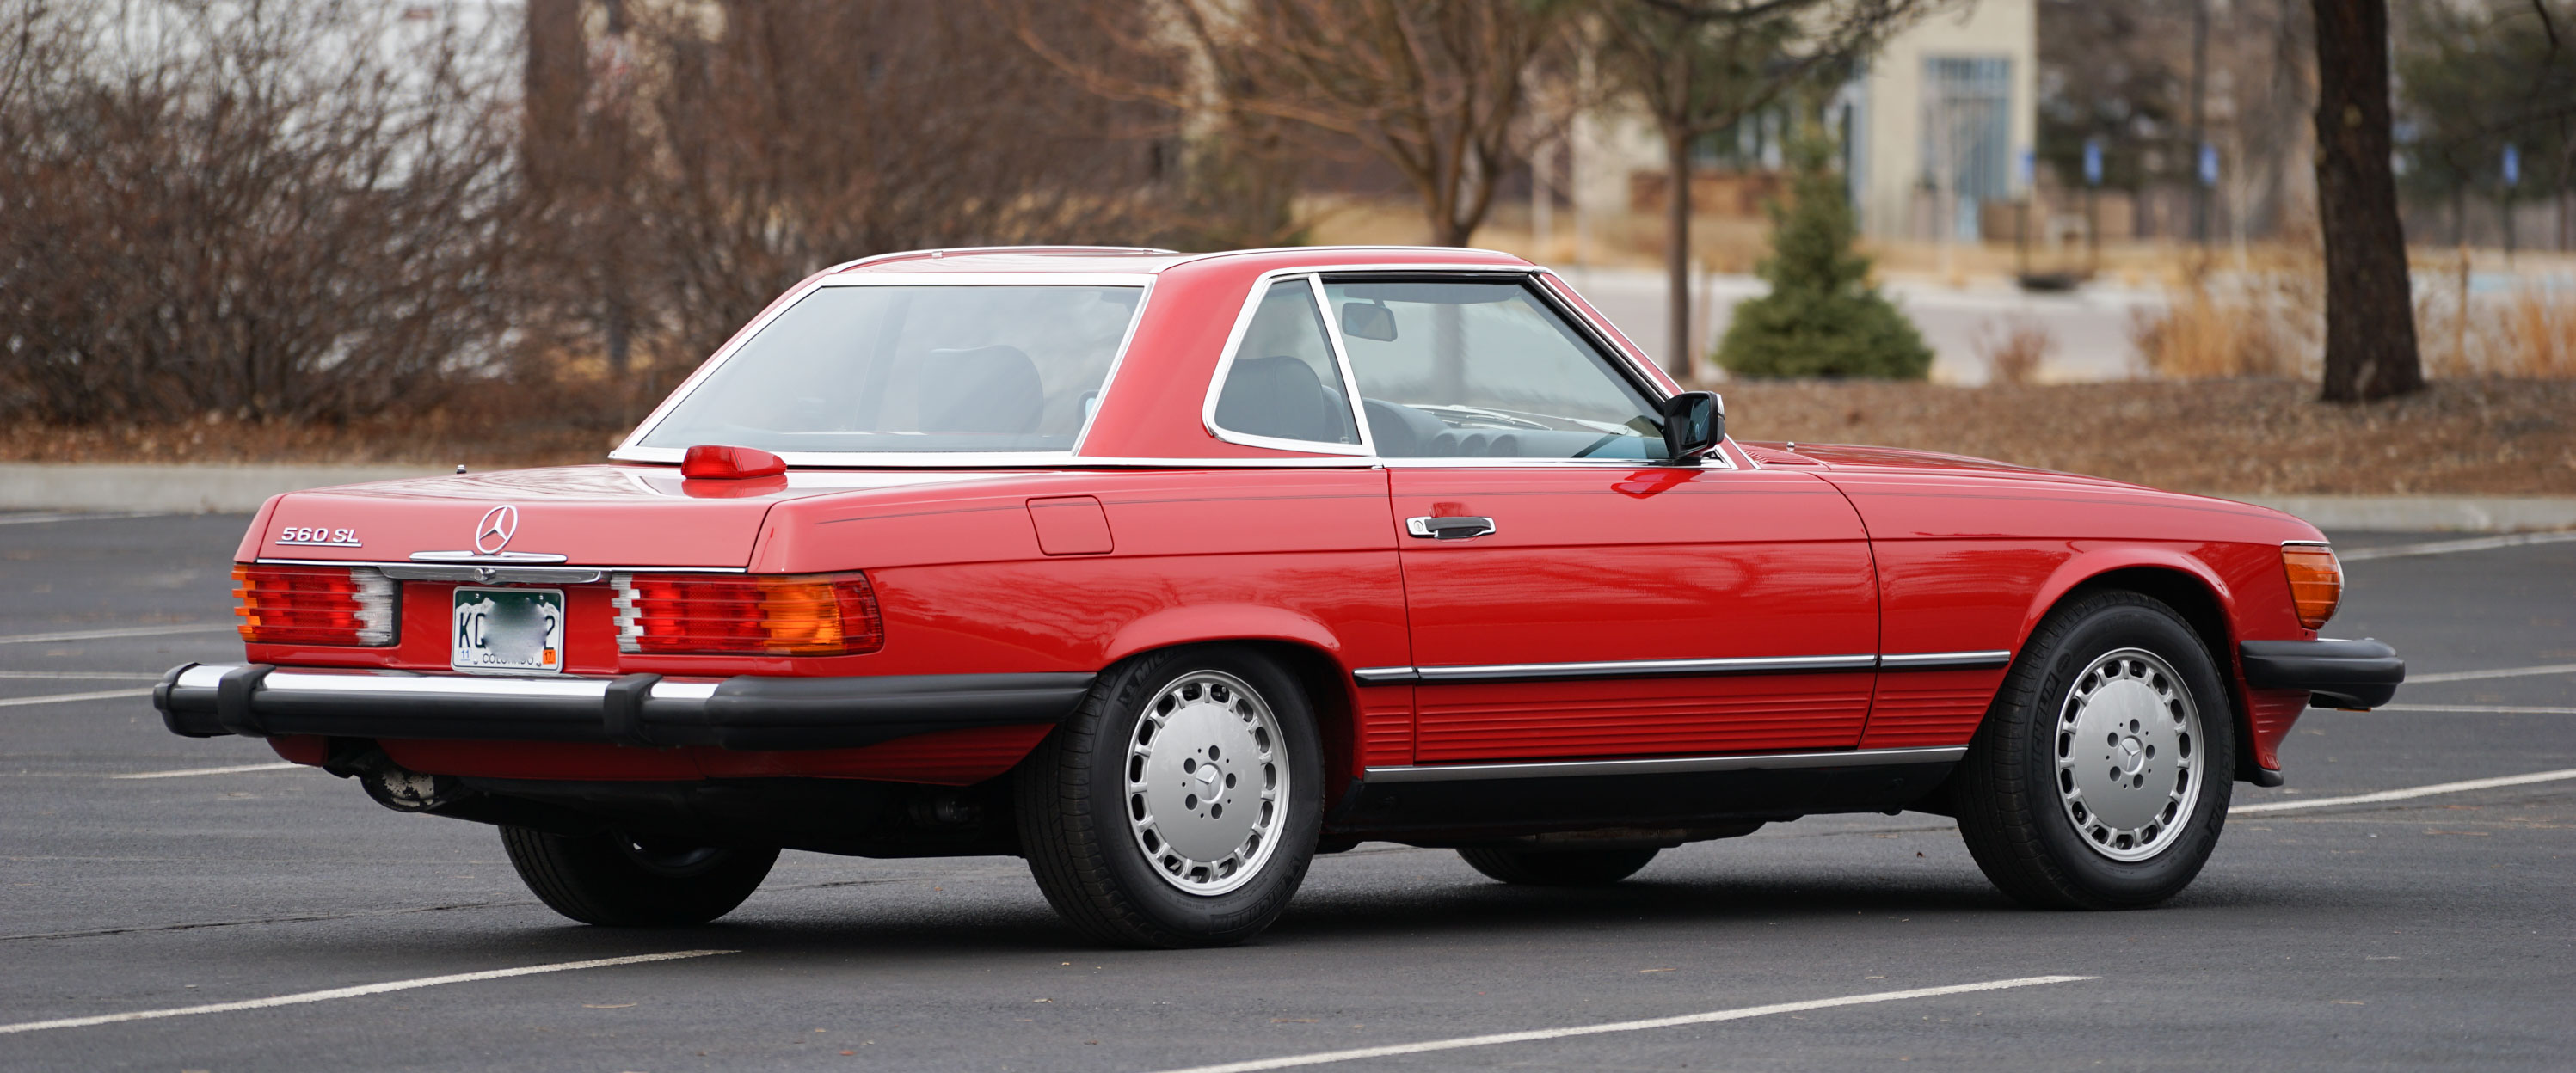 1986-Mercedes-Benz-560sl-red-slideshow-006@2x